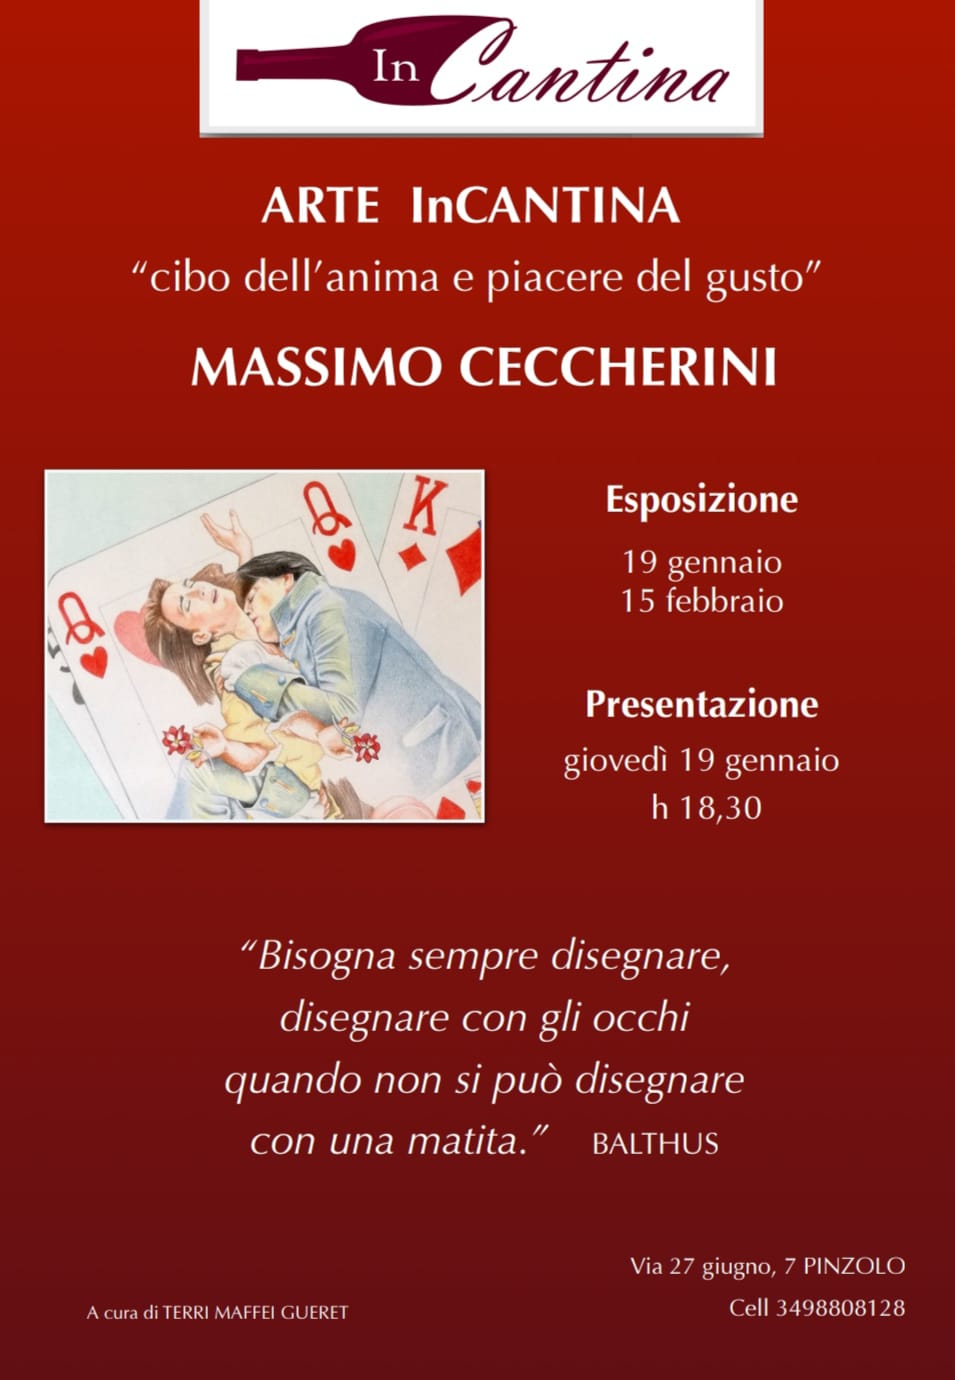 Arte InCantina: dal 19 gennaio al 15 febbraio “Massimo Ceccherini”